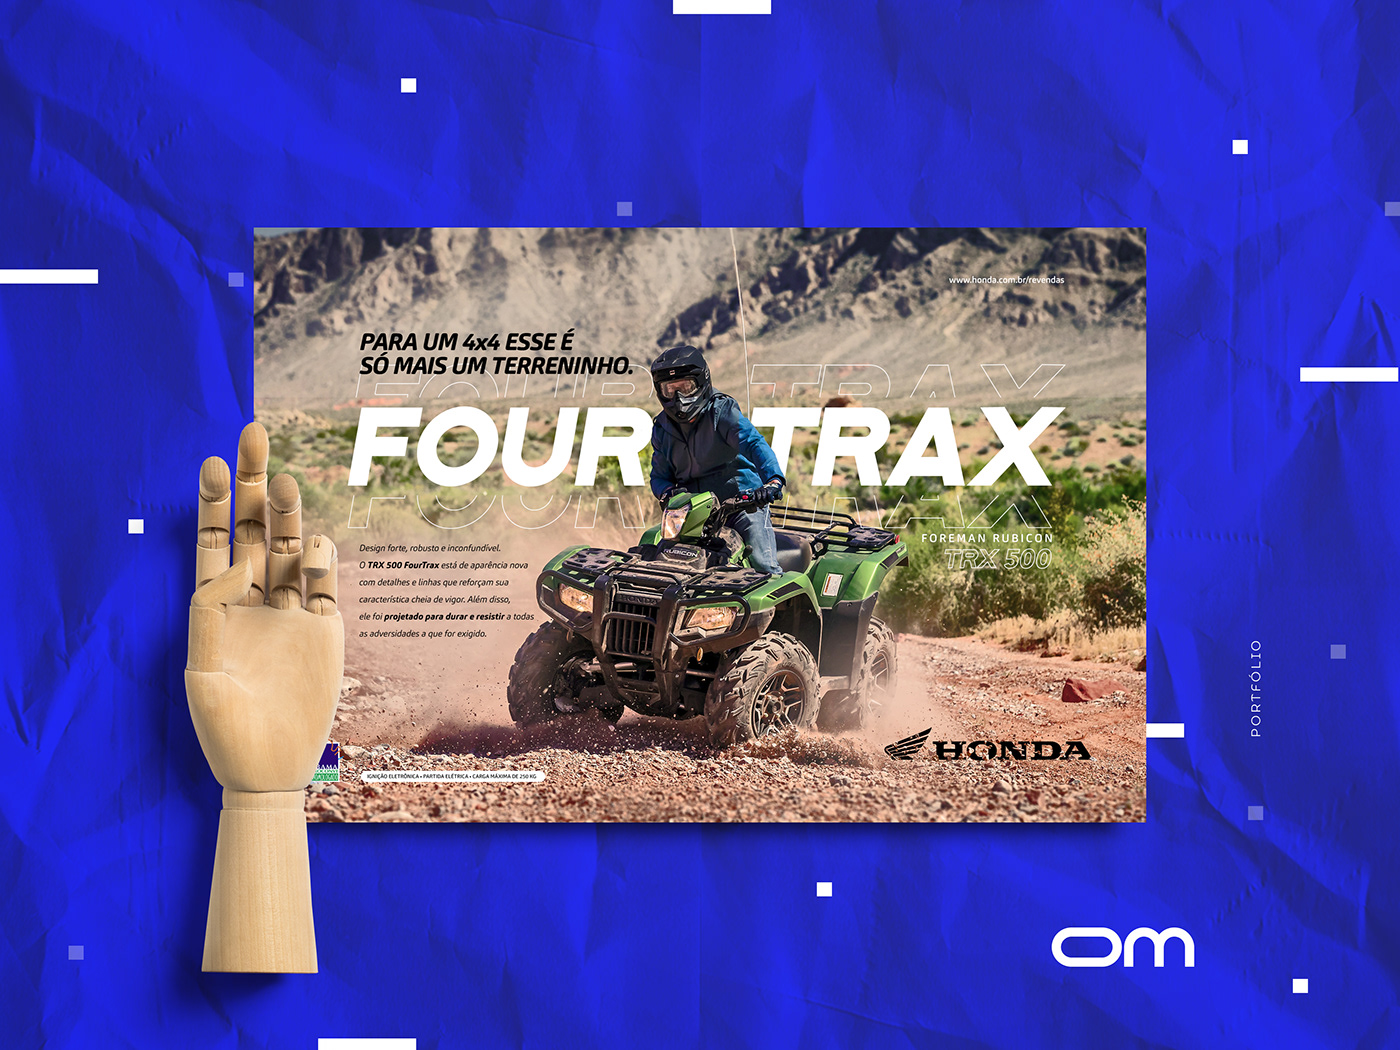 Honda fourtrax quadriciclo TRX500 anúncio design novo Direção de arte Redação